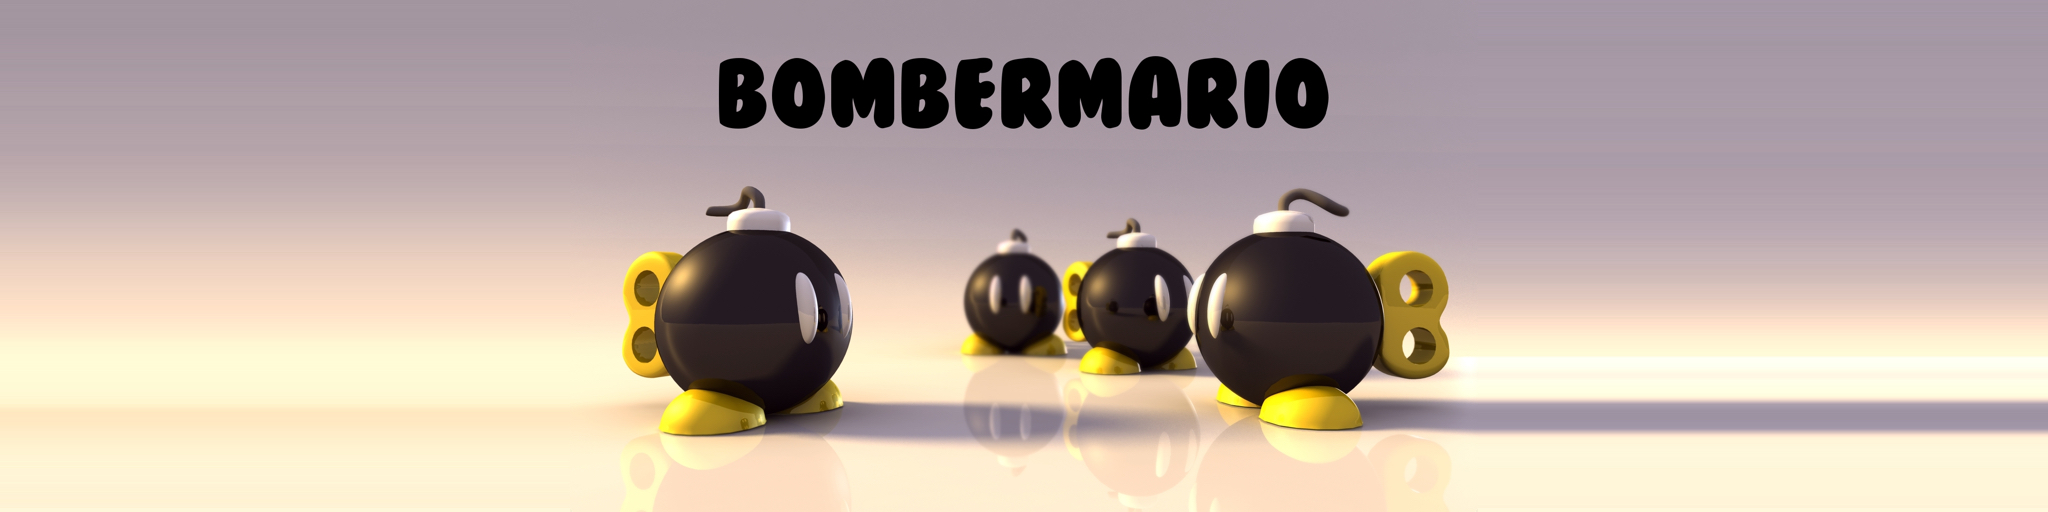 BomberMario